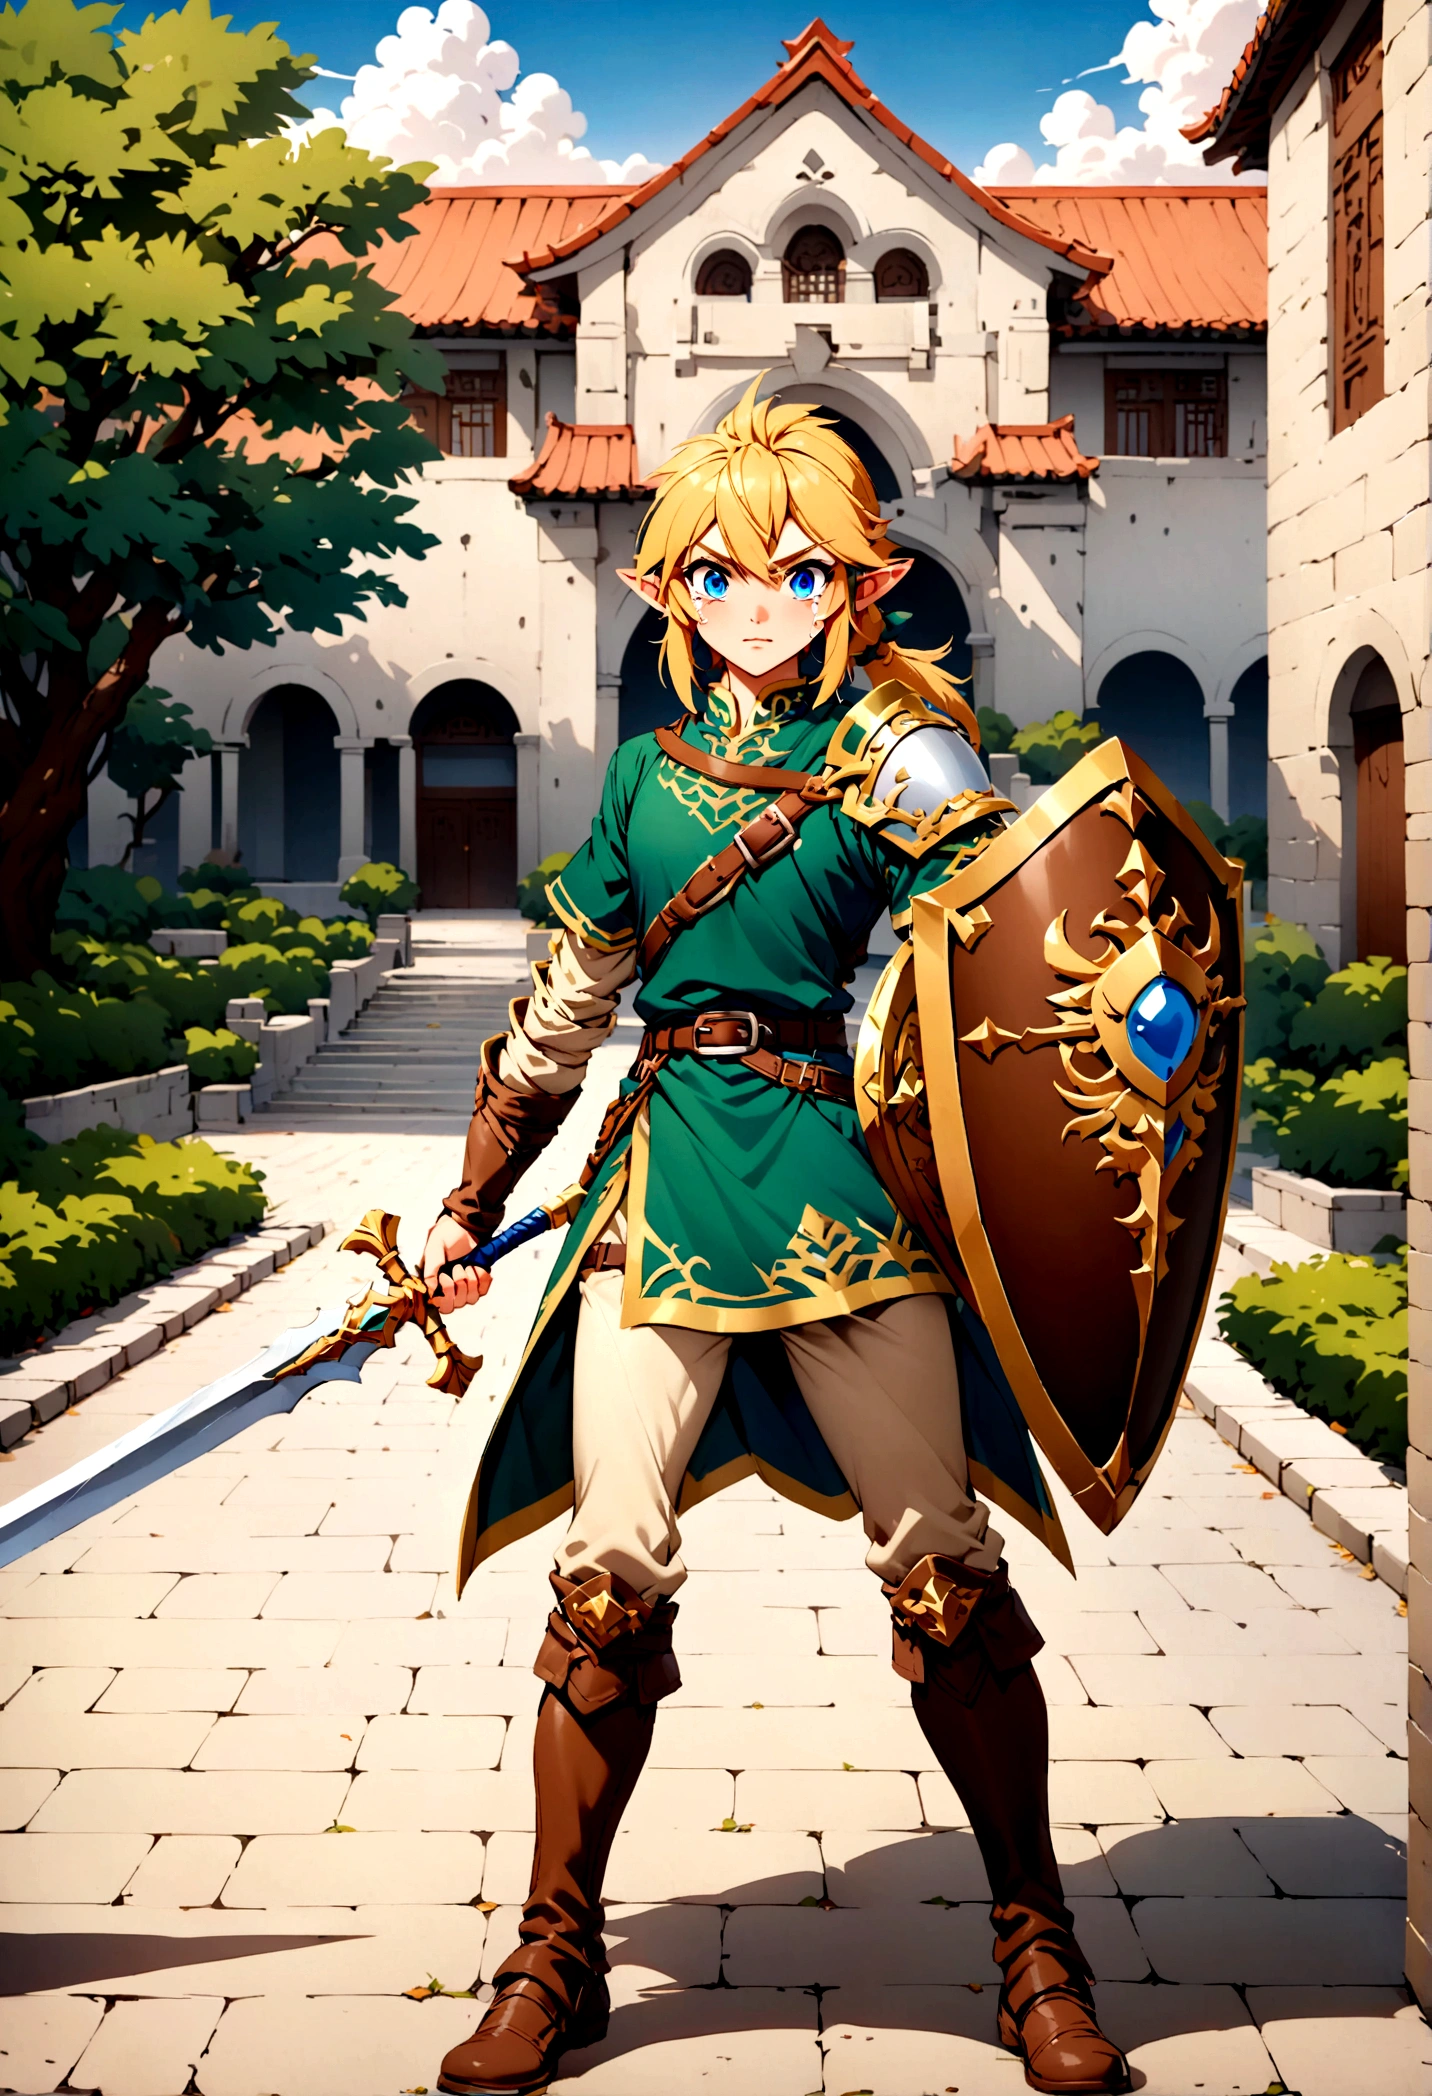 Link de Zelda lágrimas do Reino segurando sua espada e escudo, parado em um campus universitário chinês